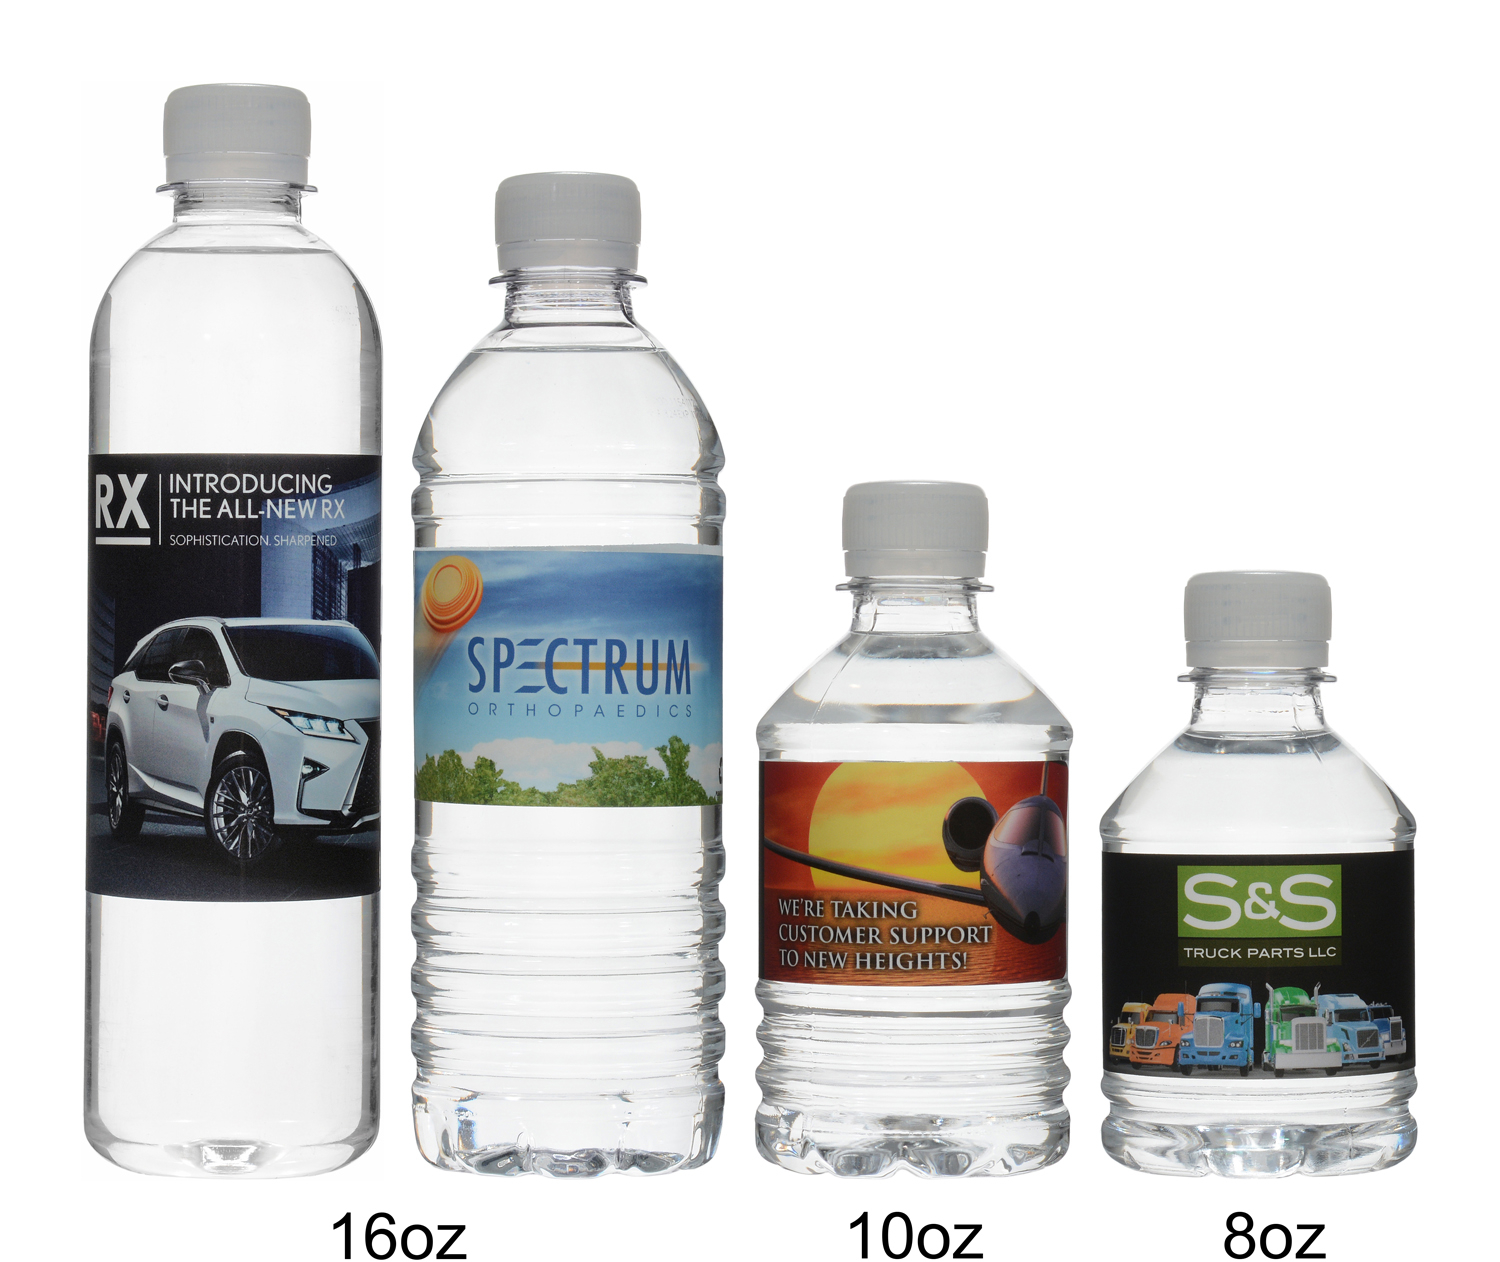 Custom Water Bottles - 16 oz. Stainless Steel Bottle